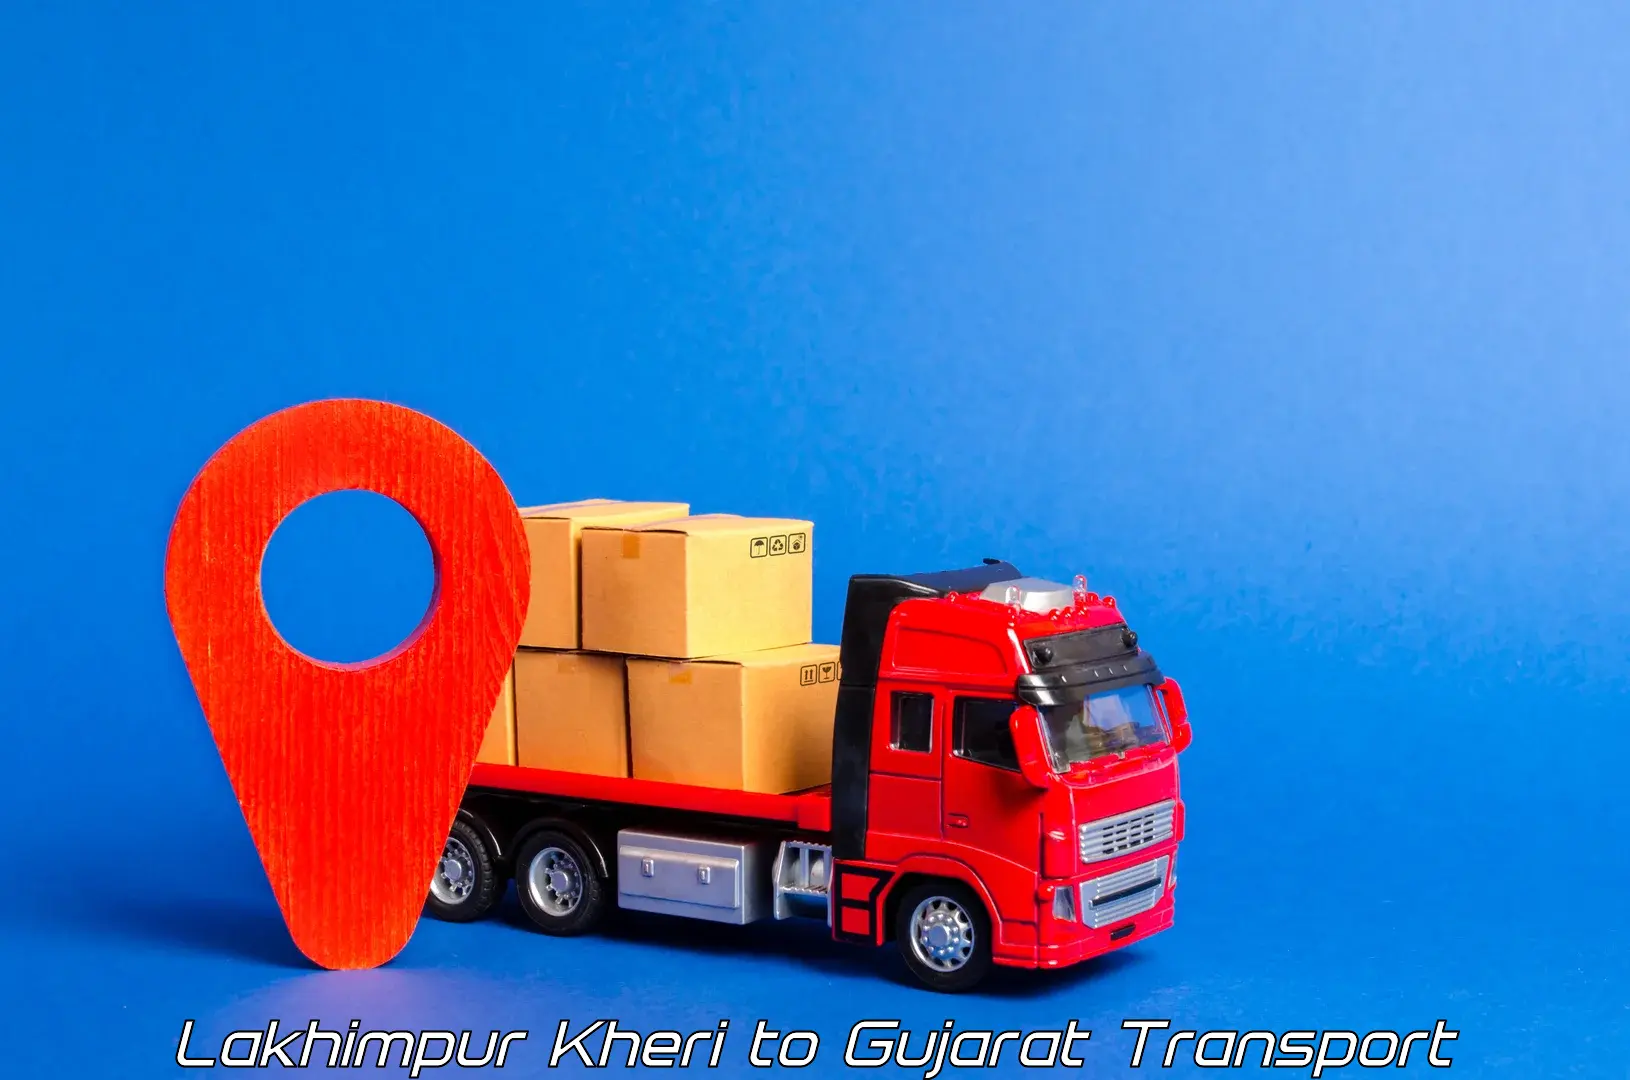 Shipping partner Lakhimpur Kheri to IIIT Surat